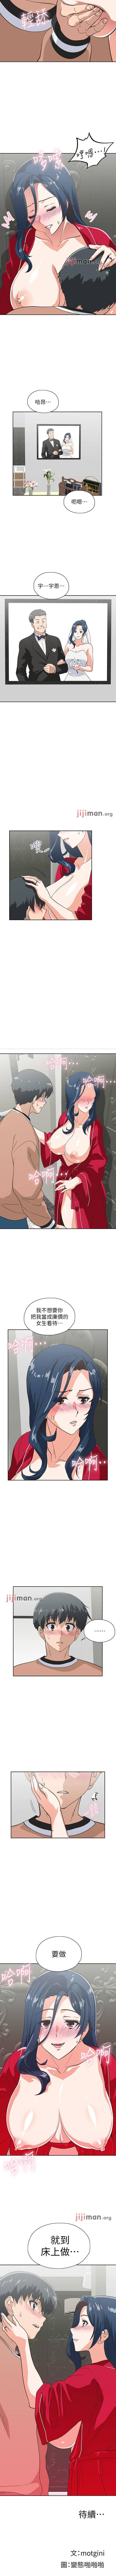 【周四连载】梦幻速食店（作者：motgini&變態啪啪啪） 第1~31话 183